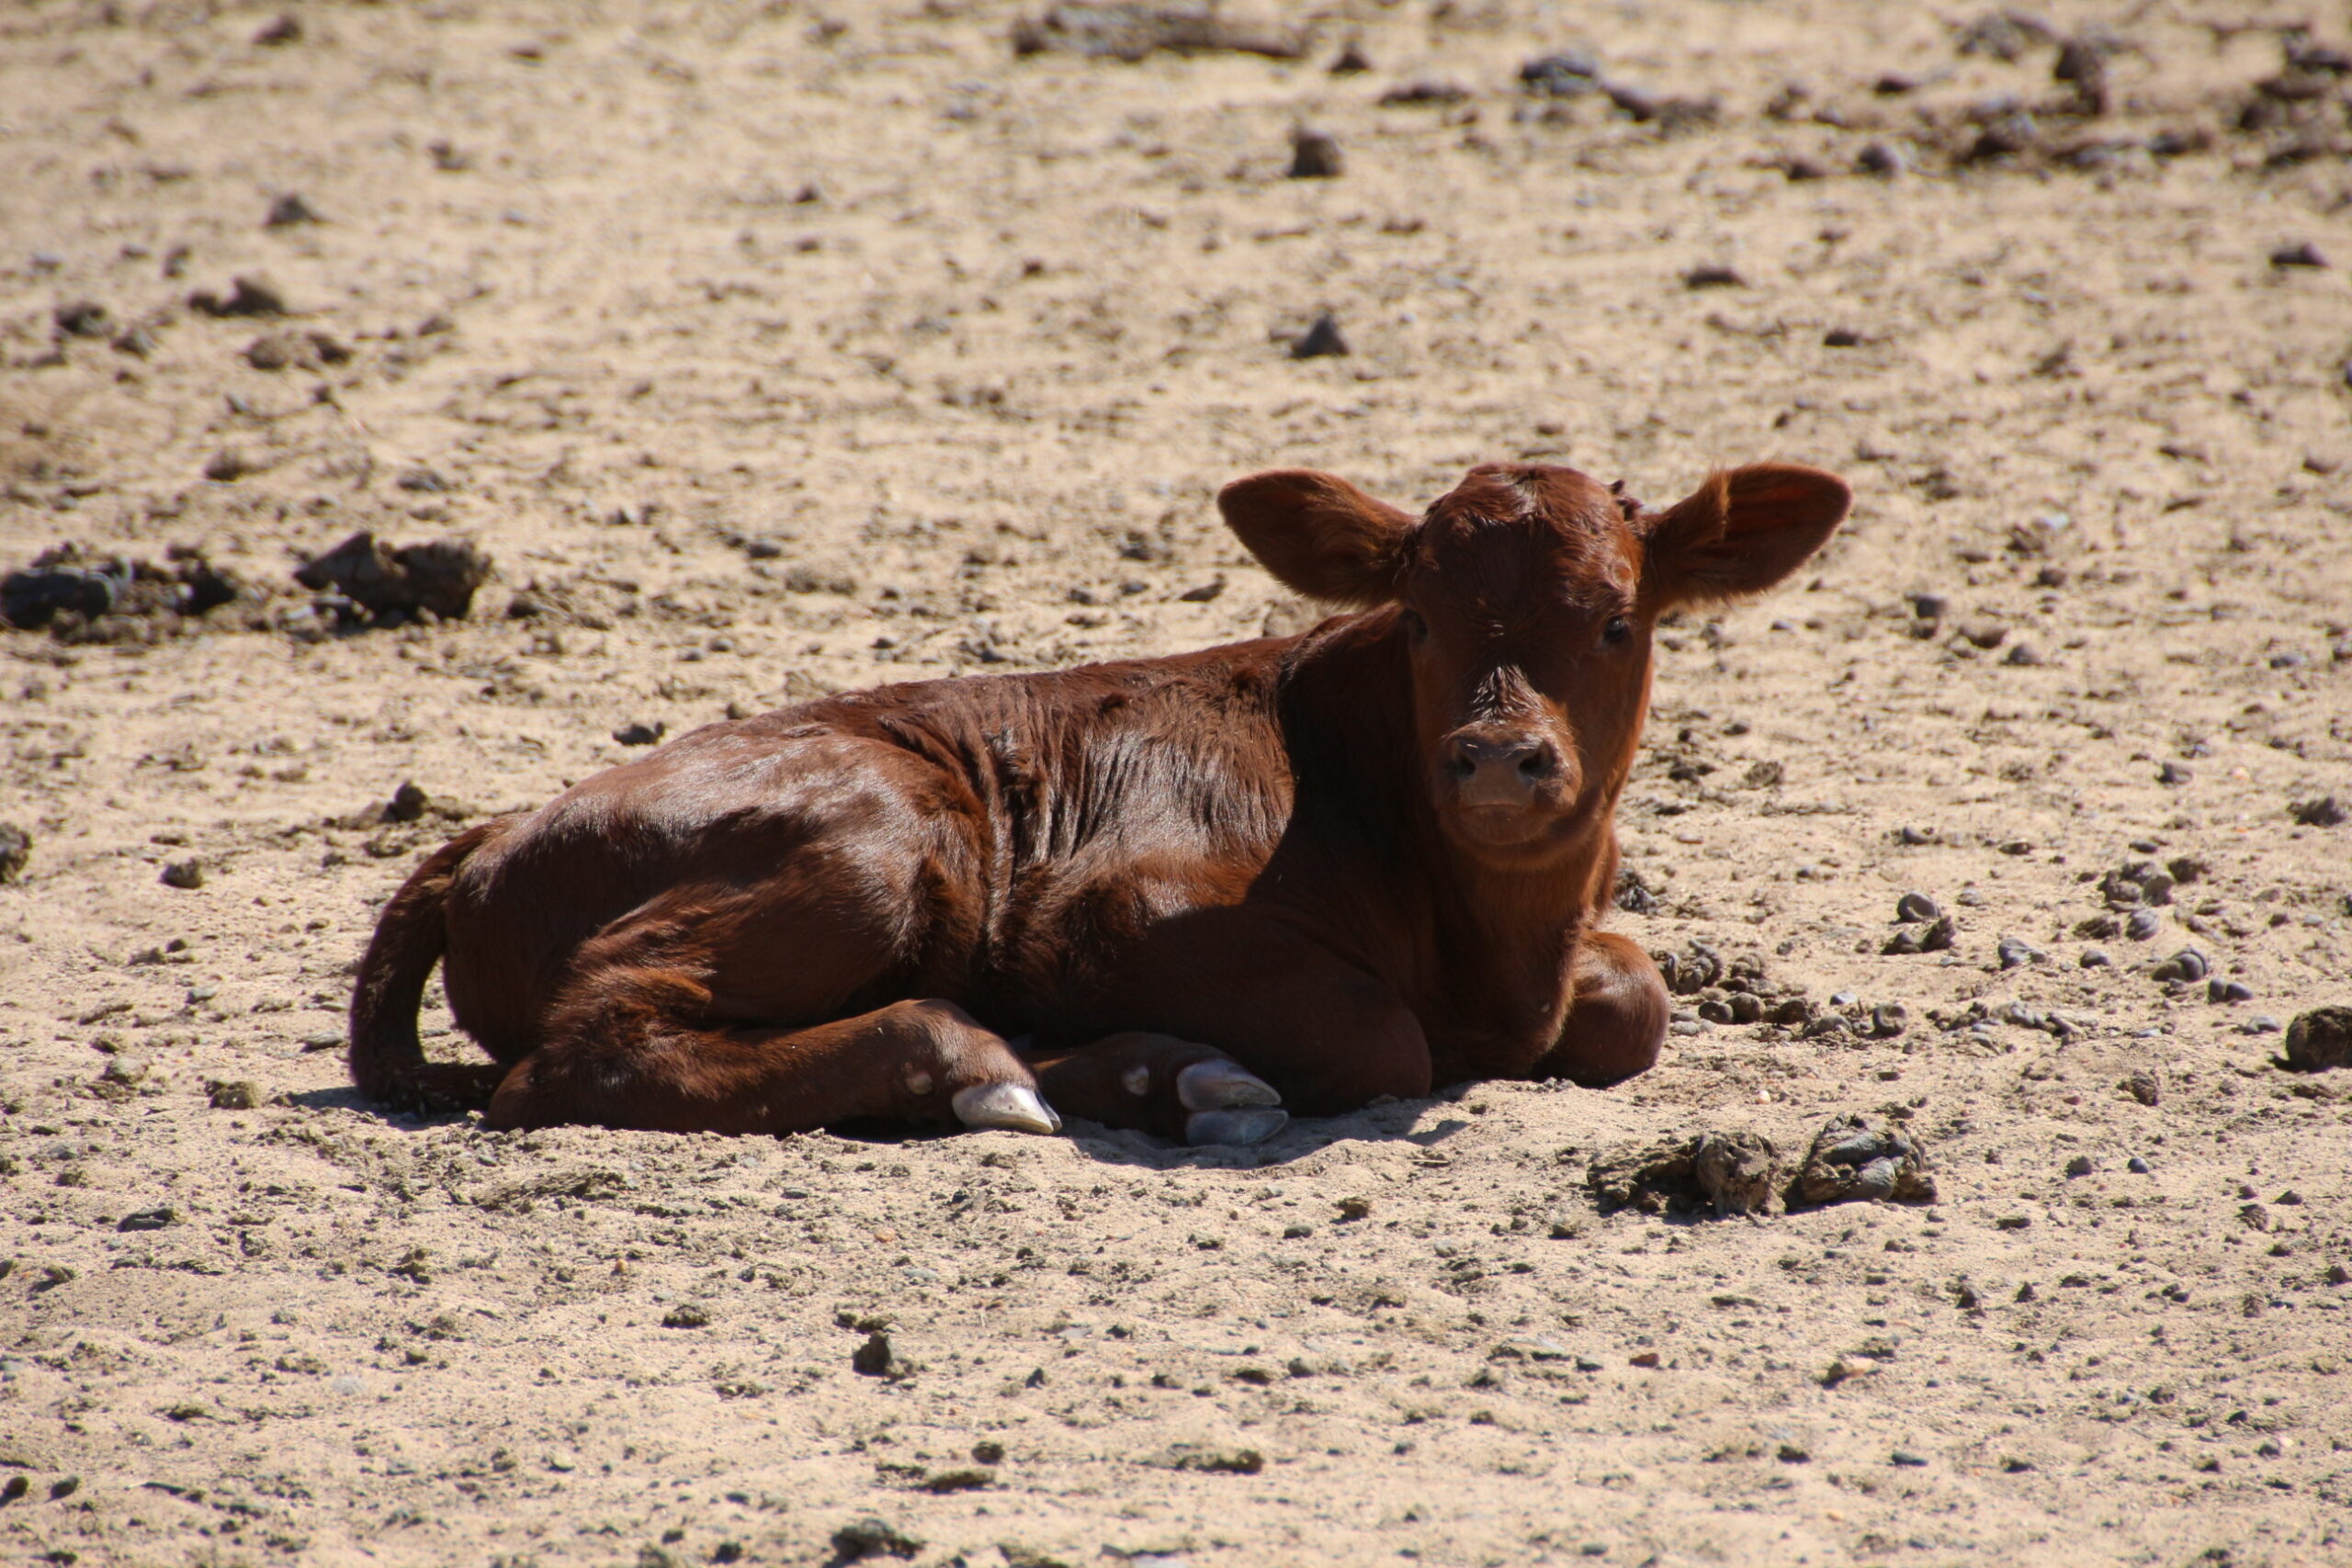 Calf rearing, poddy calves, feeding, calf health care and more